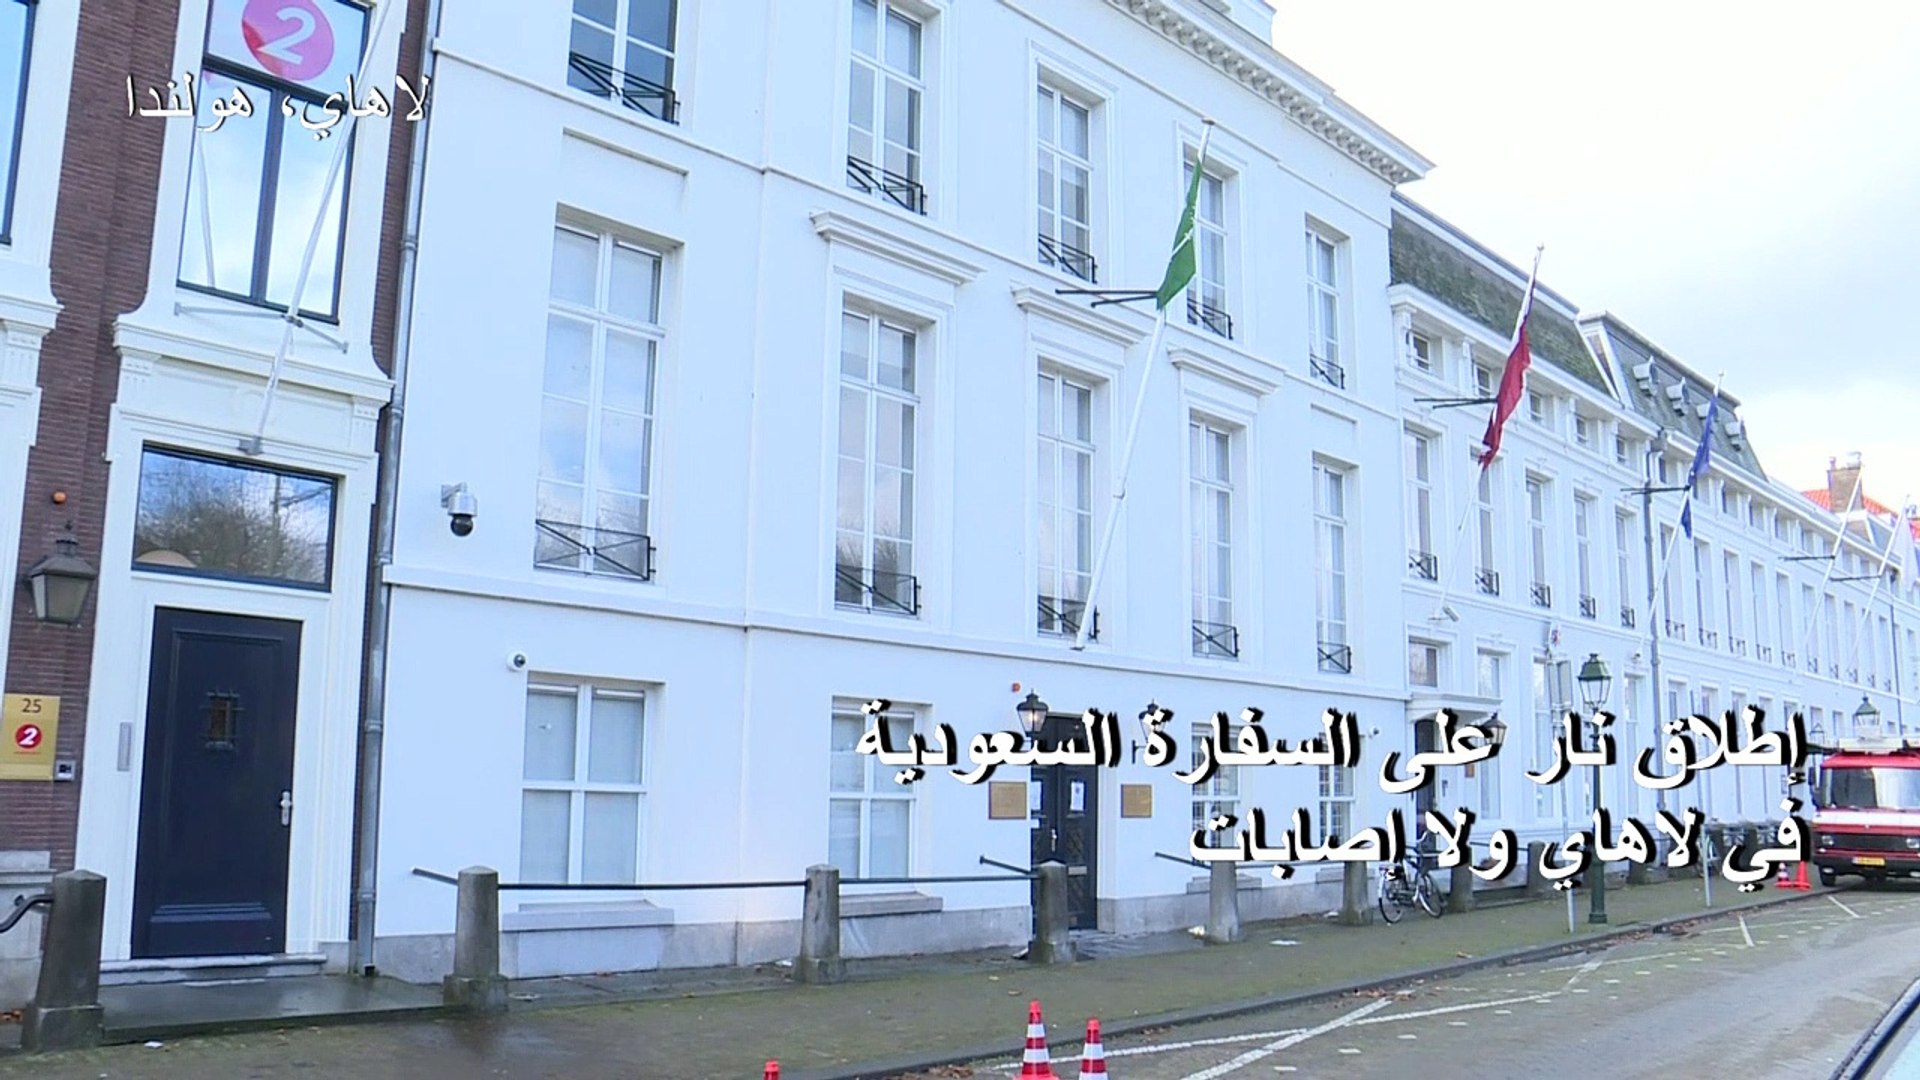 إطلاق نار على السفارة السعودية في لاهاي ولا إصابات - Vidéo Dailymotion